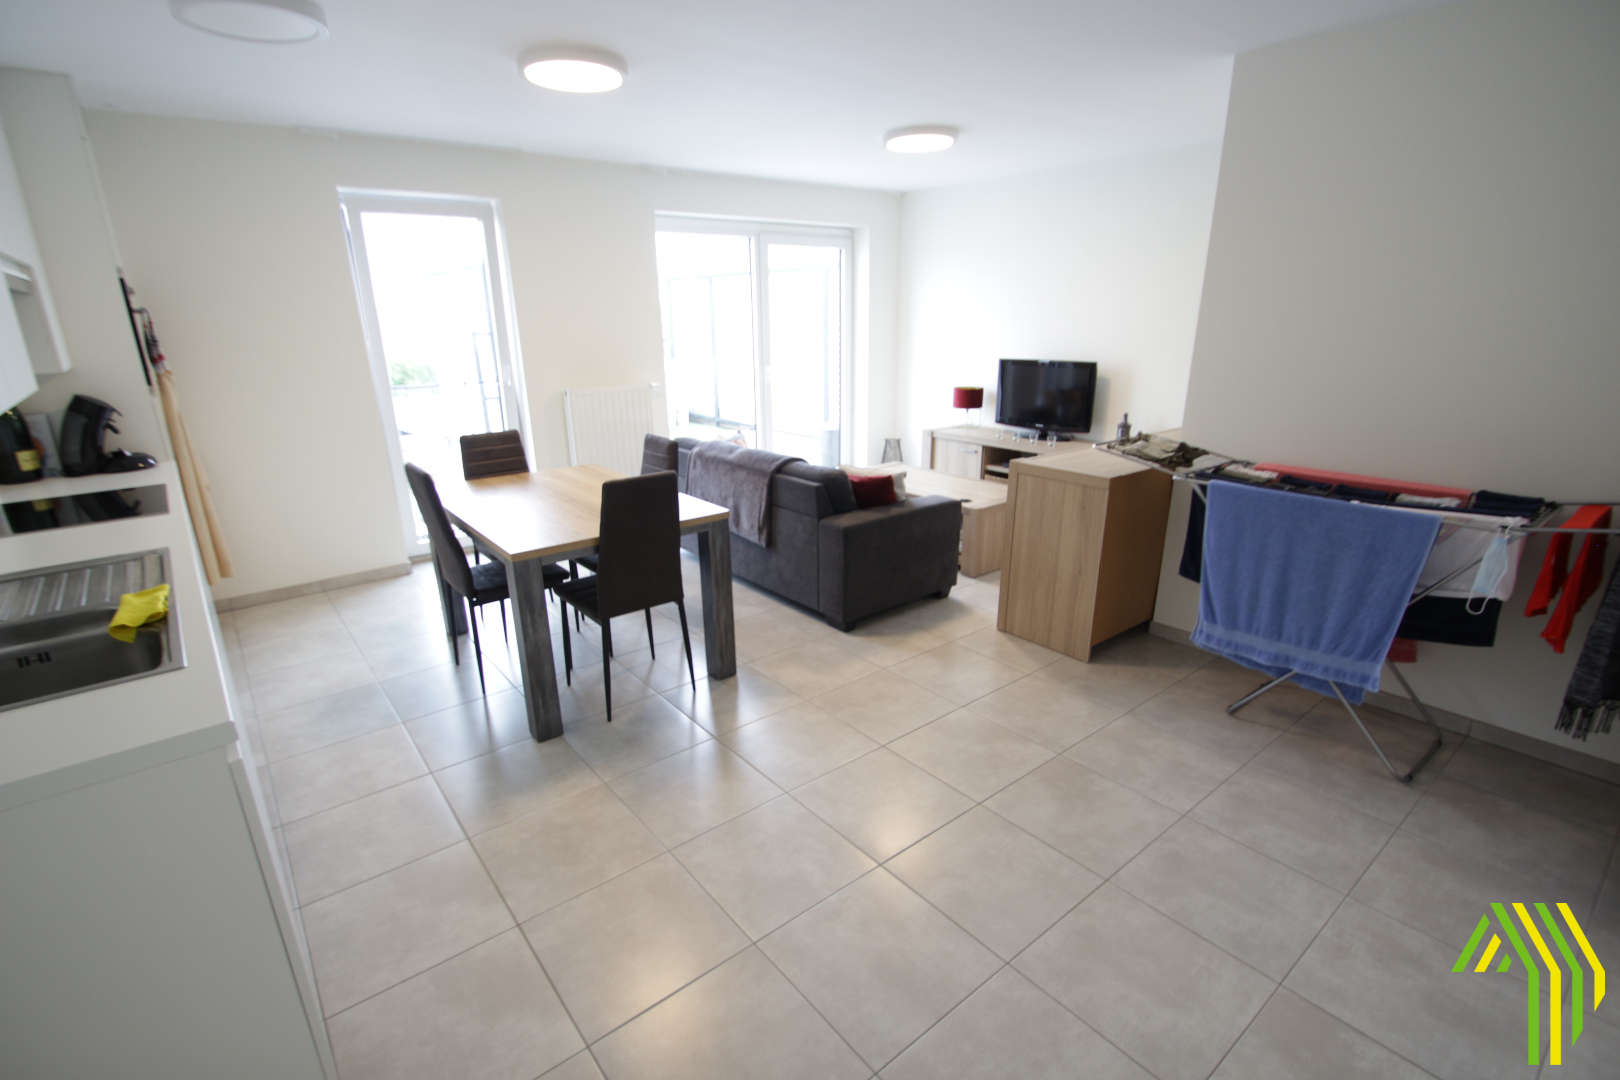 Recent en volledig afgewerkt appartement met carport in centrum Beselare 